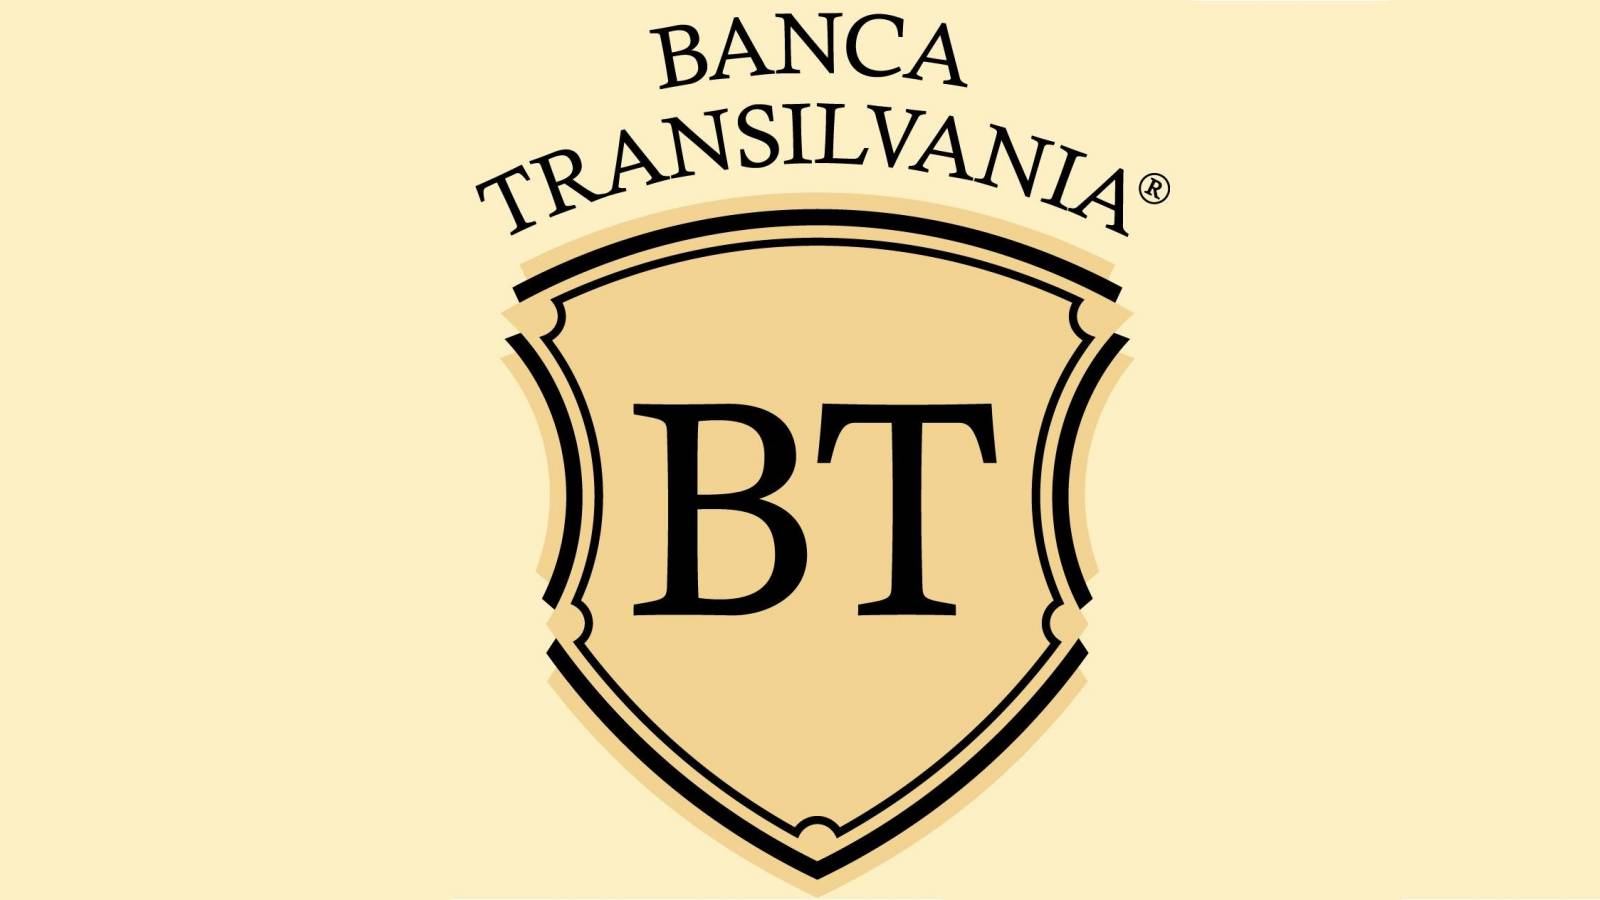 BANCA Transilvania brigada